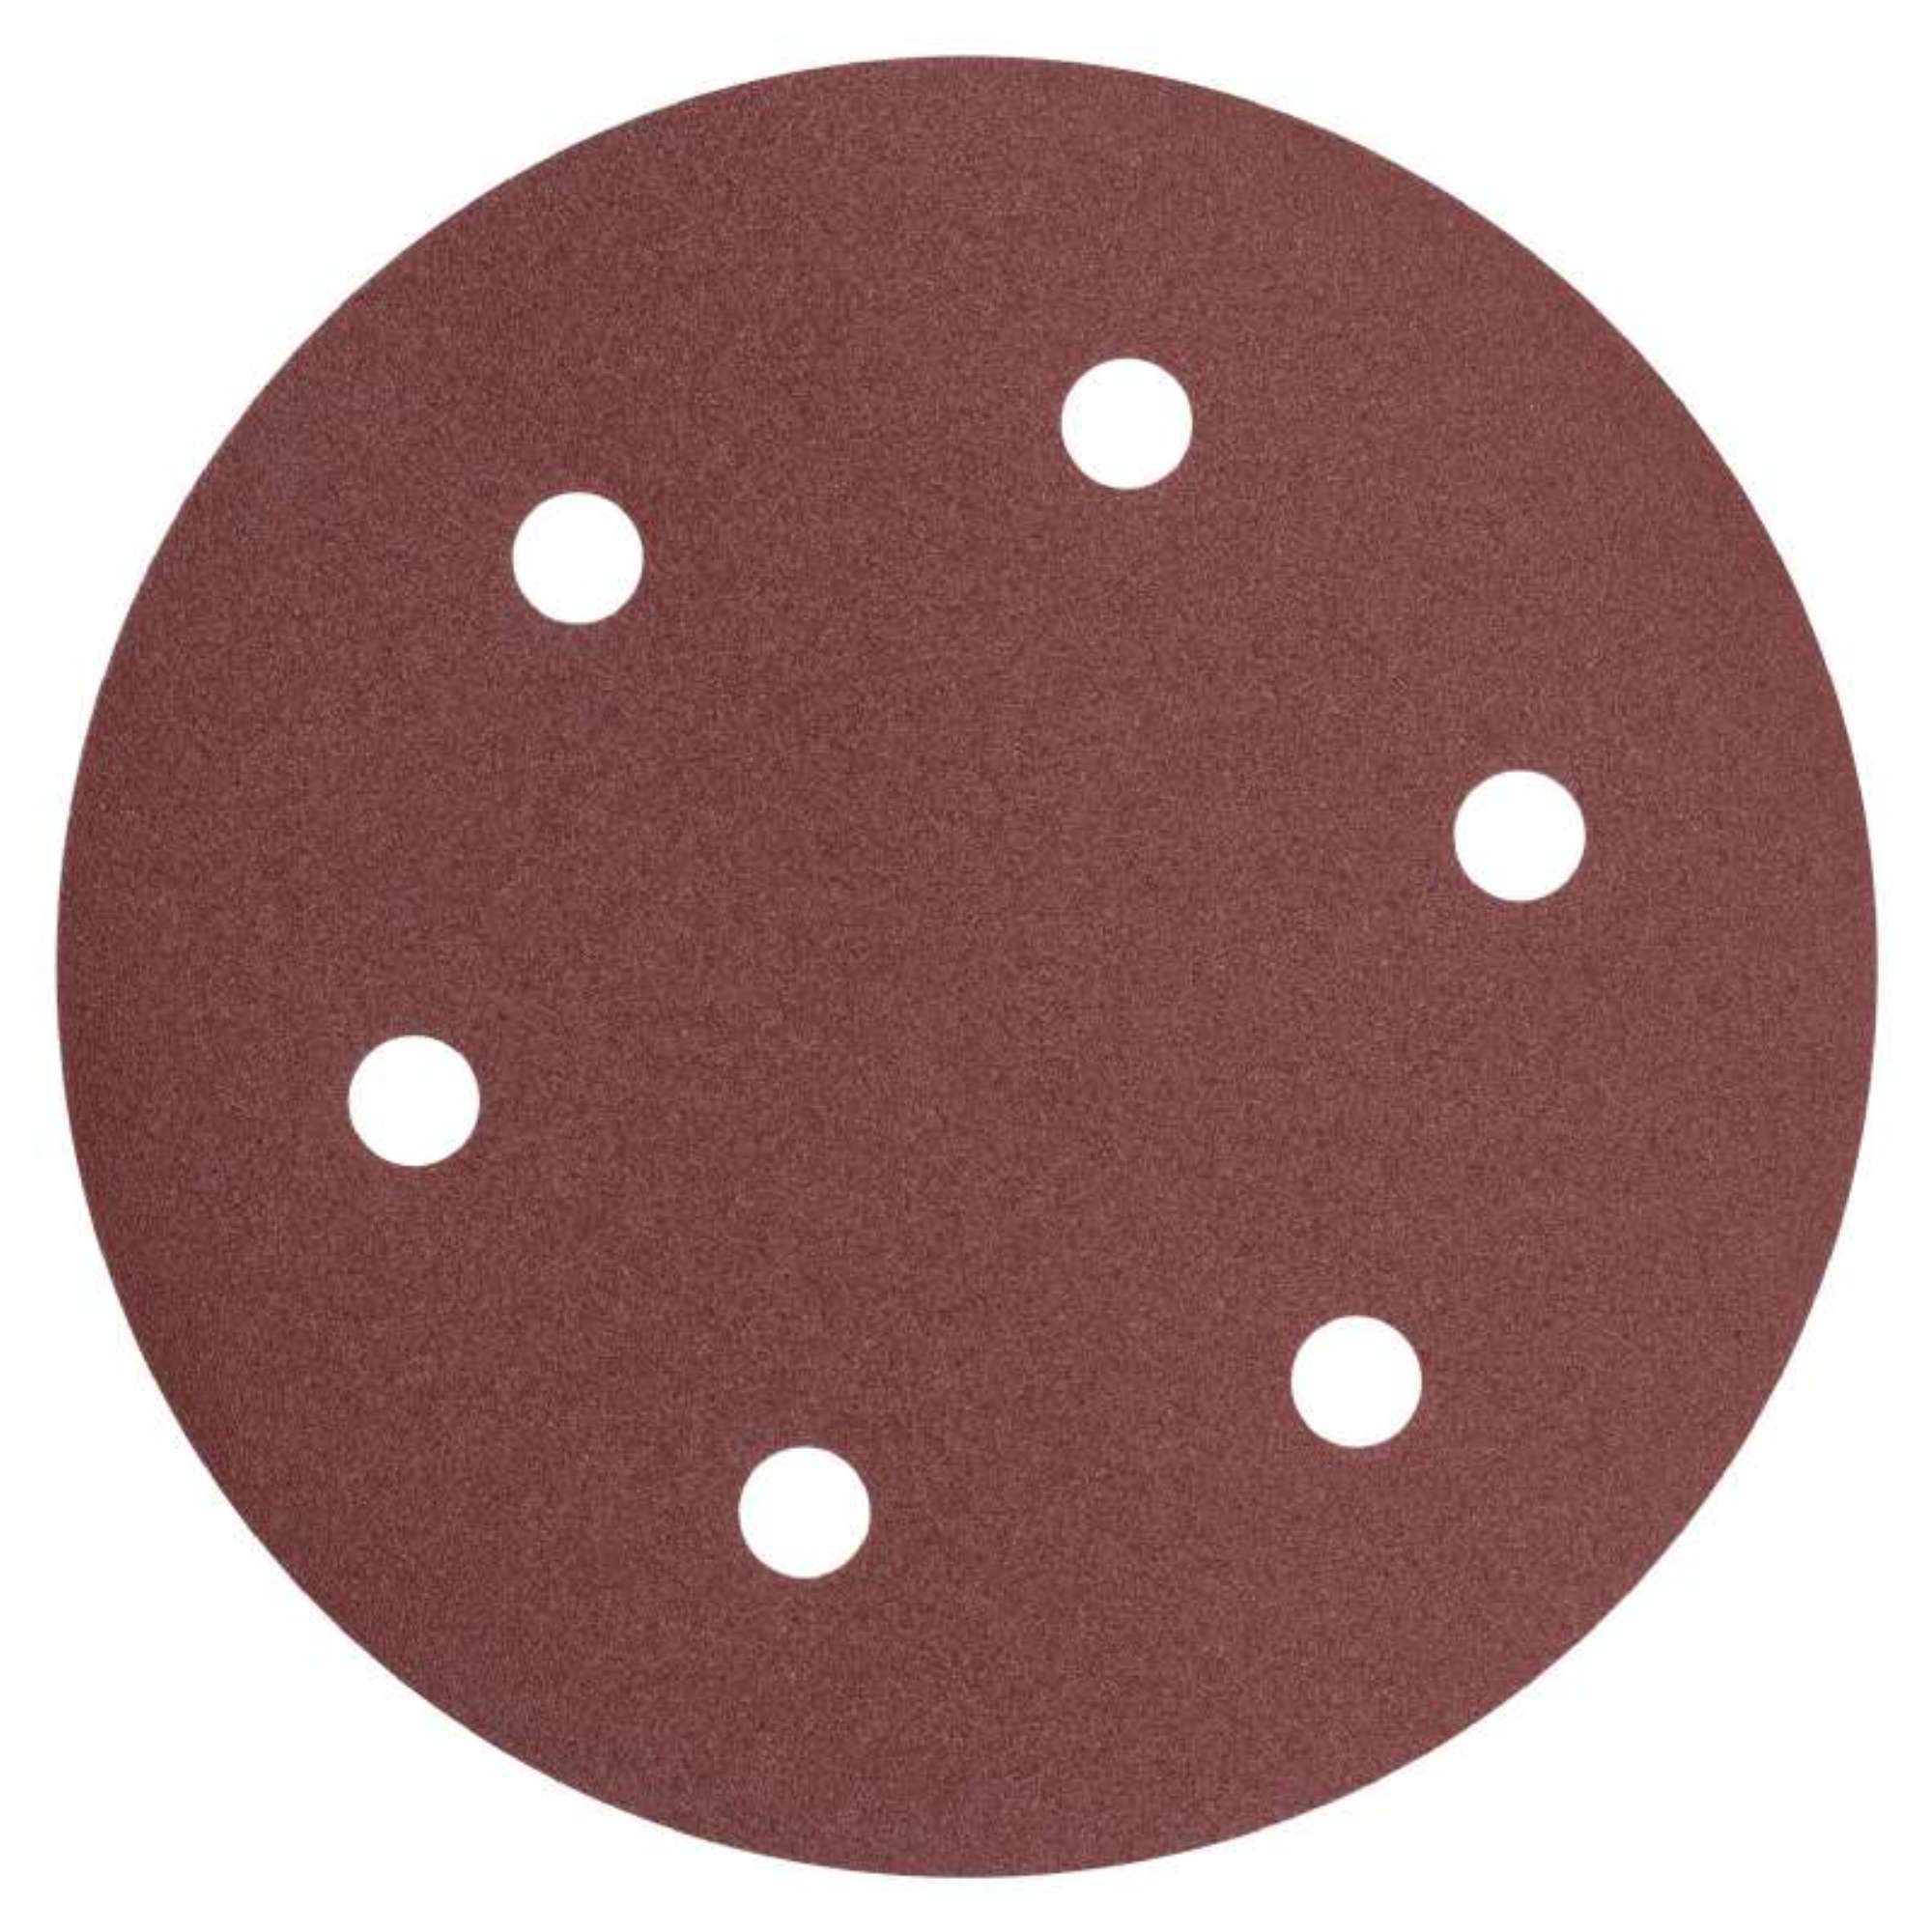 Lot de 5 disques abrasifs diamètres 125 mm - Provence Outillage